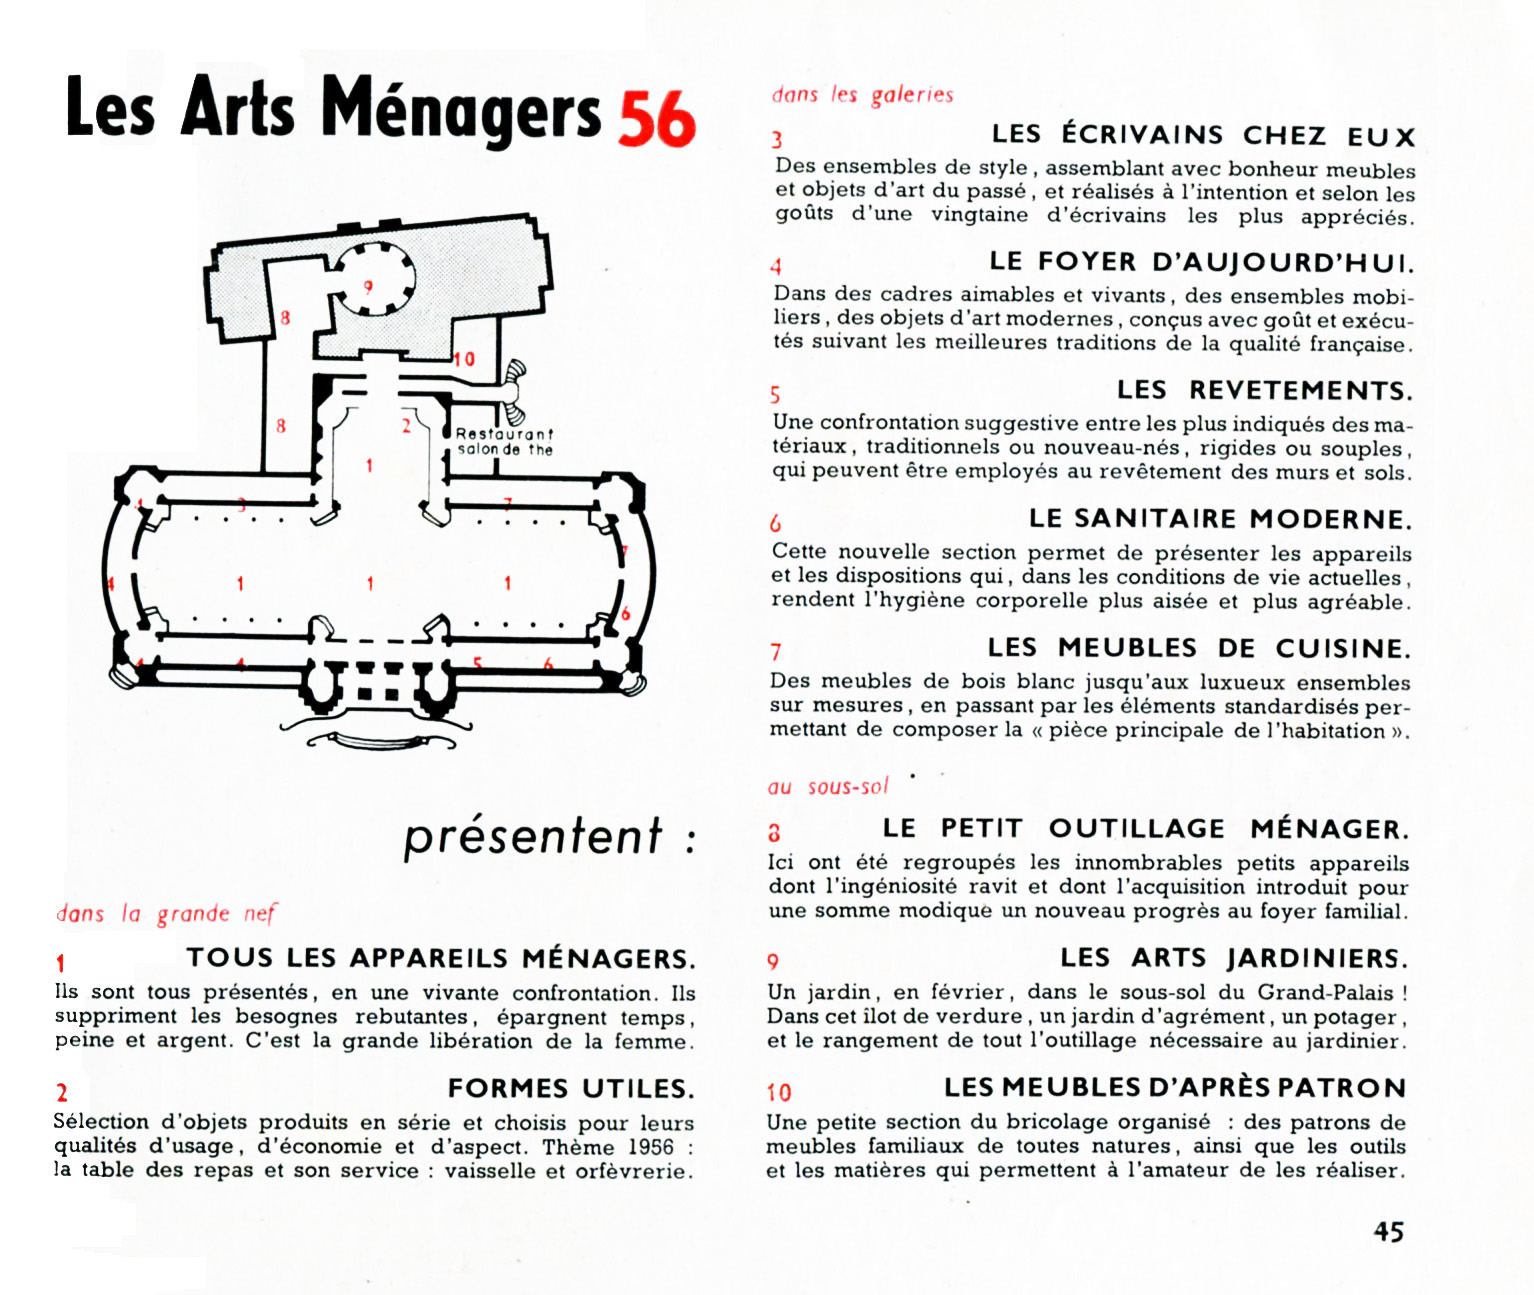 Aménager son Jardin Génial Art Utile Palmar¨s Salon Des Arts Ménagers 1956